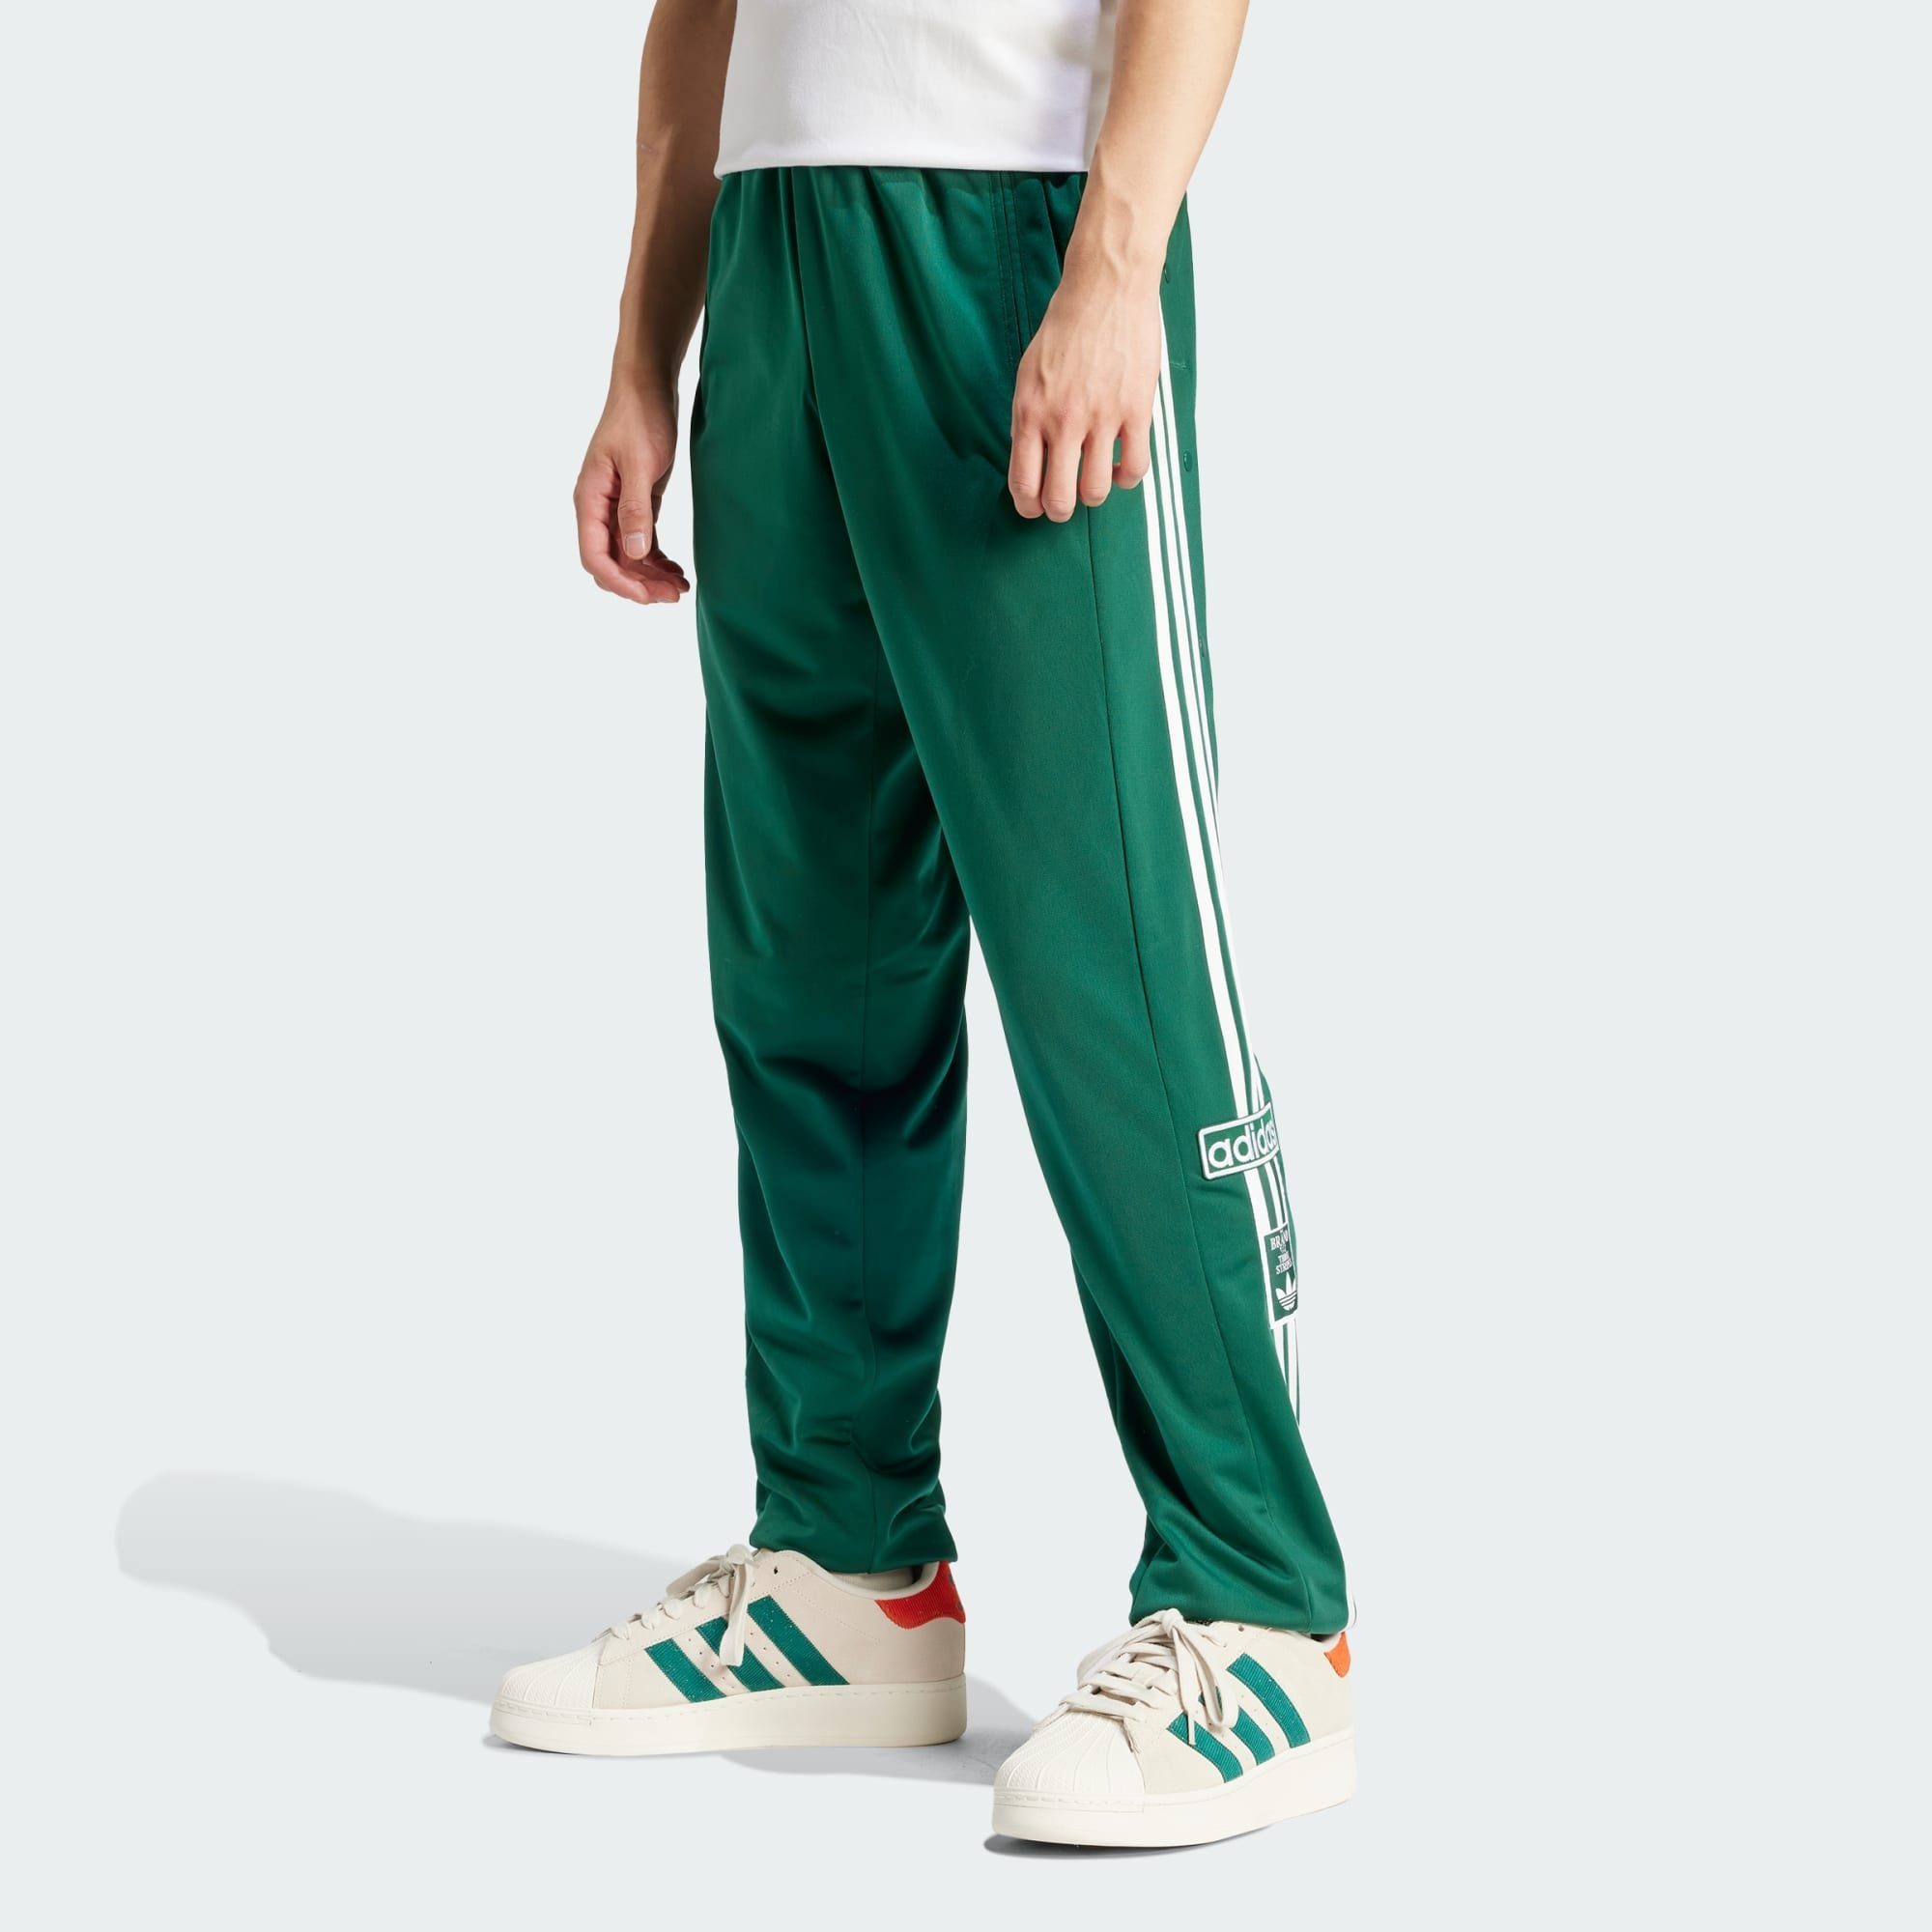 Grüne adidas Originals Herren Jogginghosen kaufen | OTTO